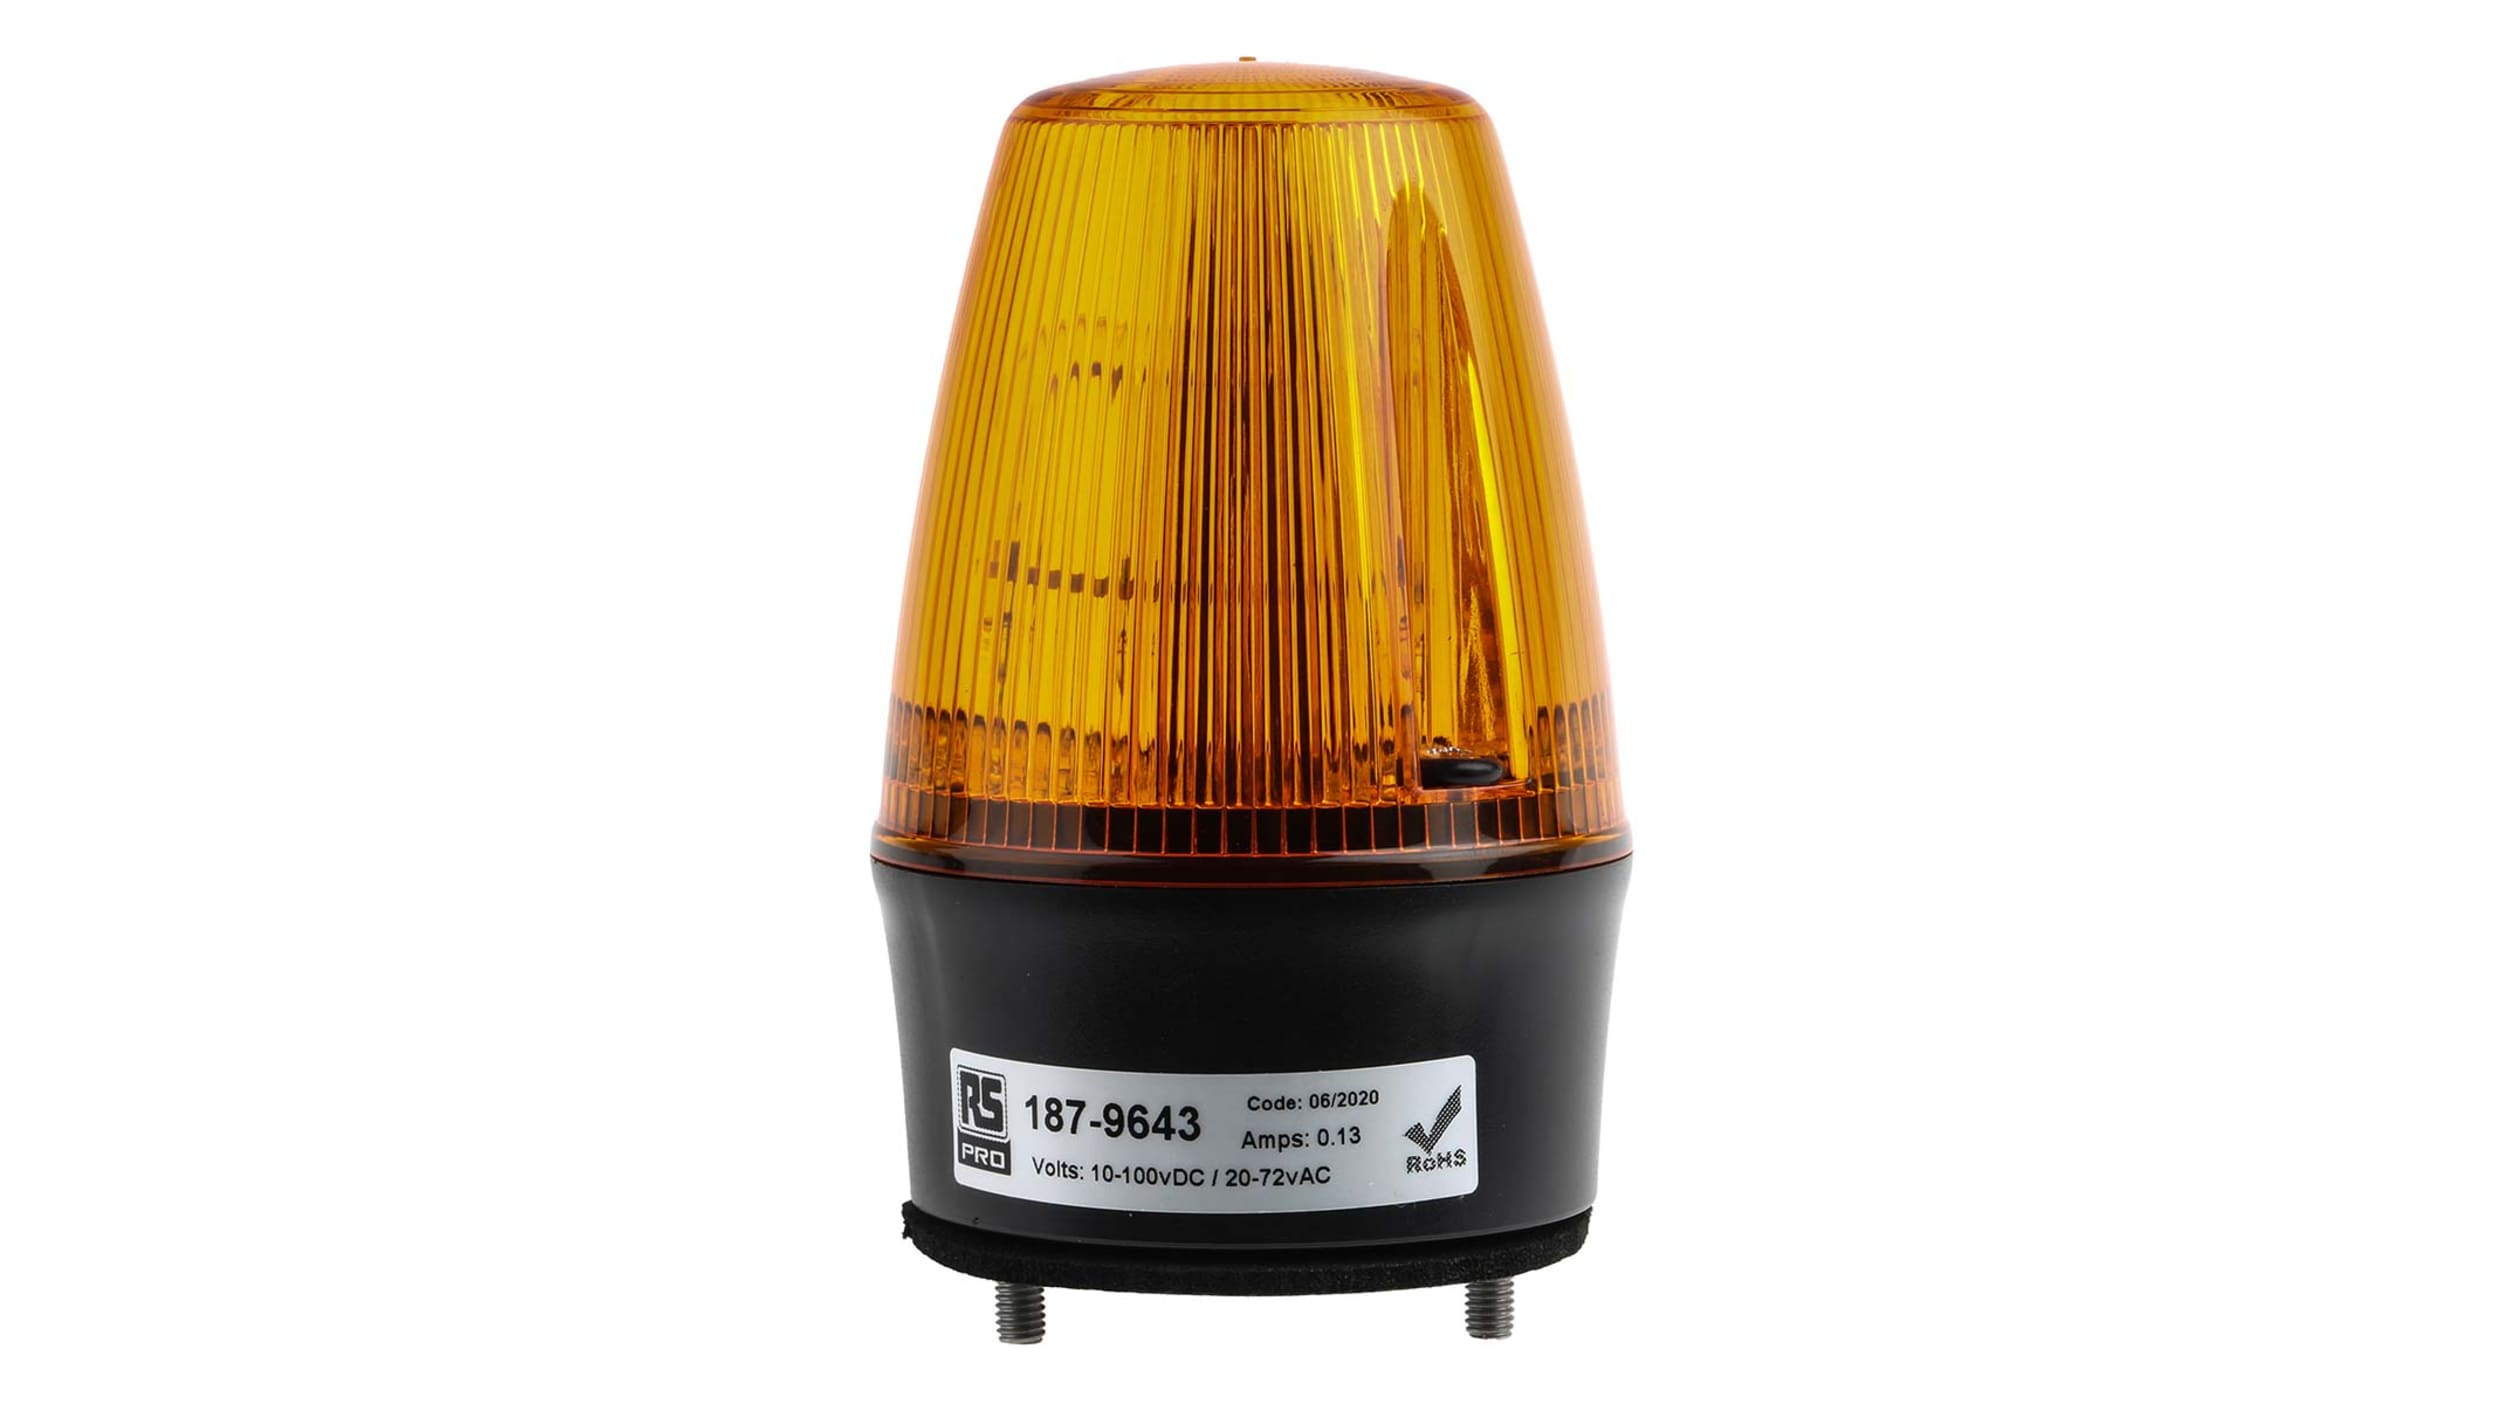 Signalstation orange XVB, Blitzlicht 10 J, 230V AC, IP 65, 179,89 €